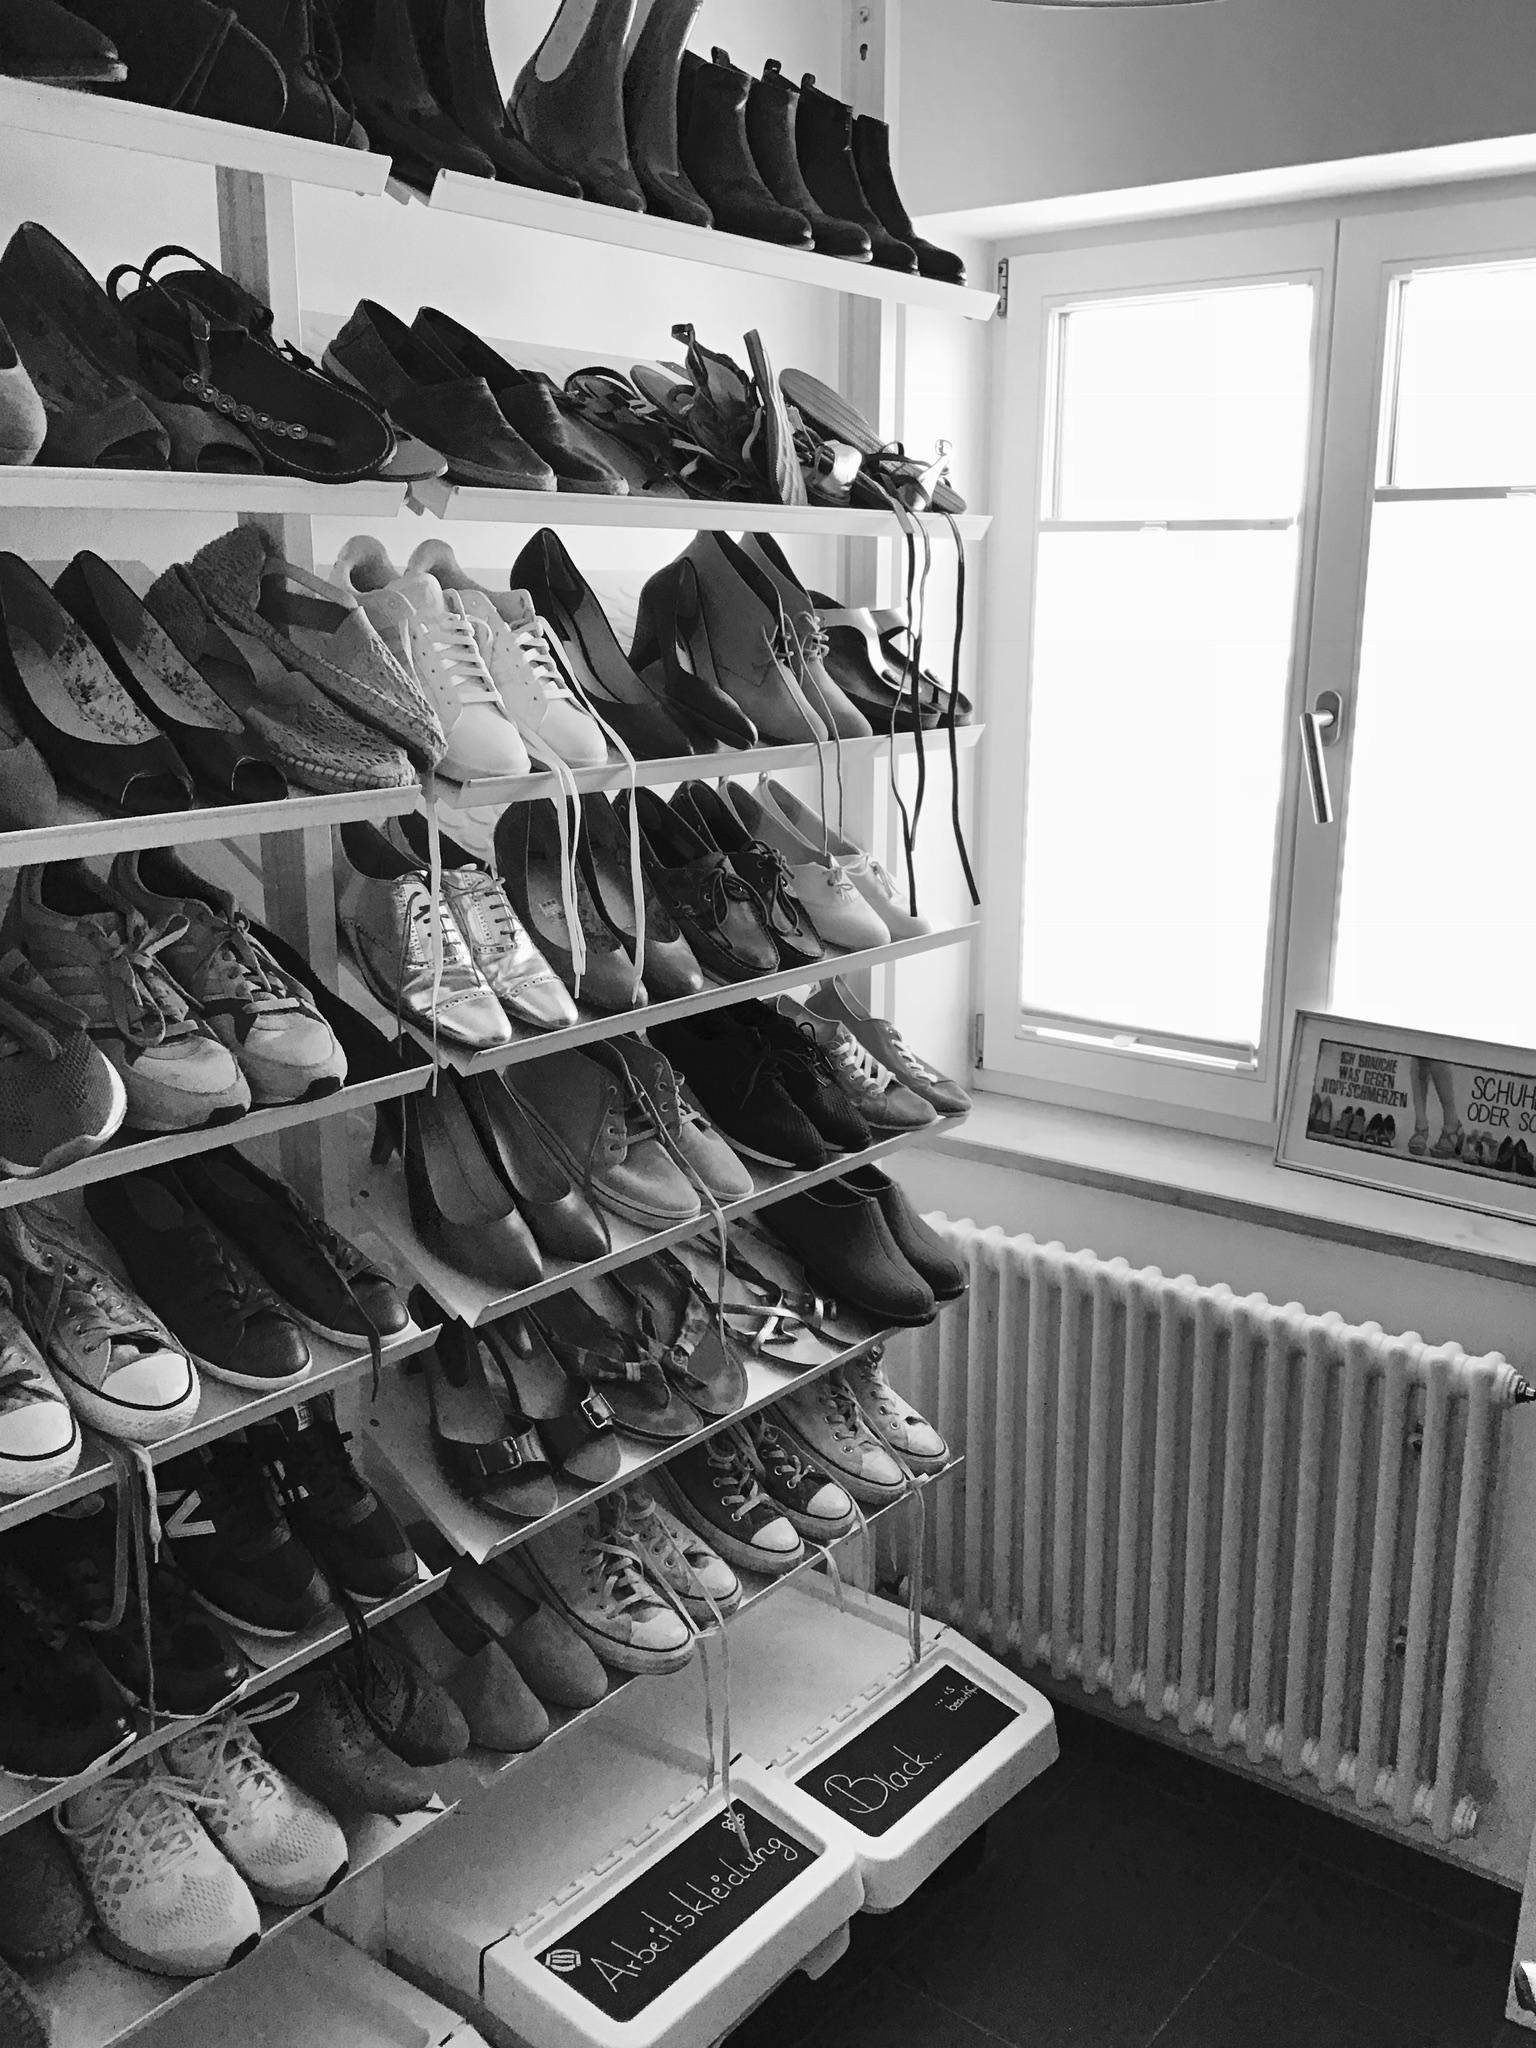 #kleinraum #livingchallenge #perfektgenutzt #Iloveshoes